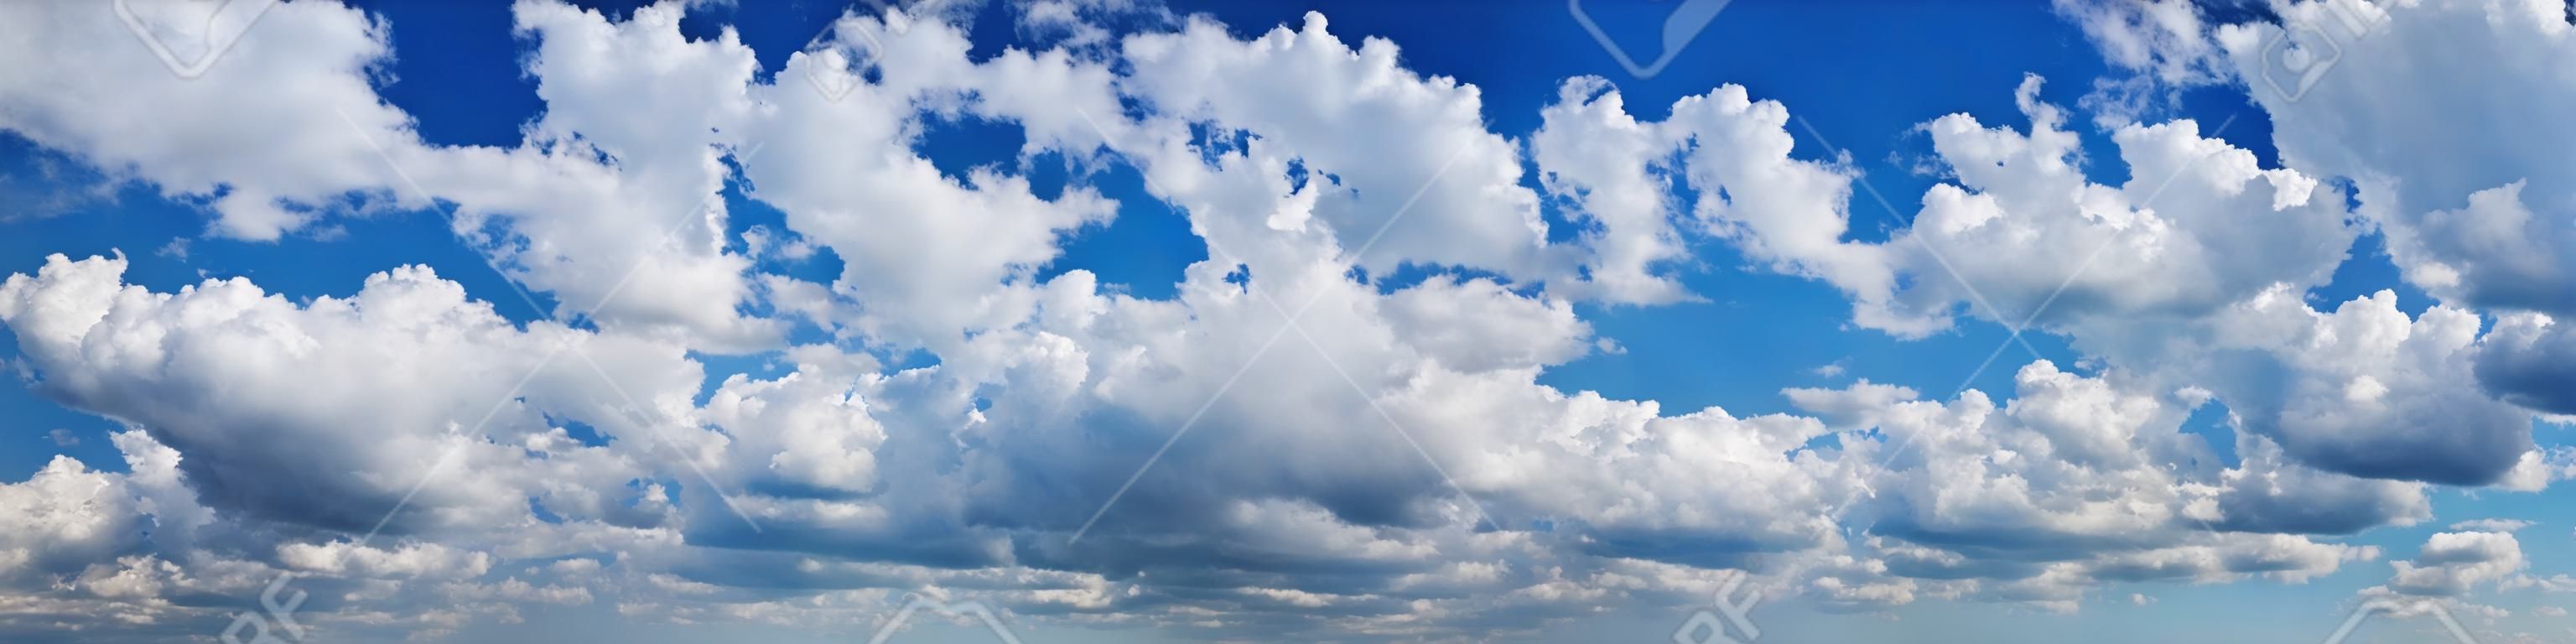 Ciel bleu avec beaucoup de nuages ??cumulus blancs moelleux. Format très large.